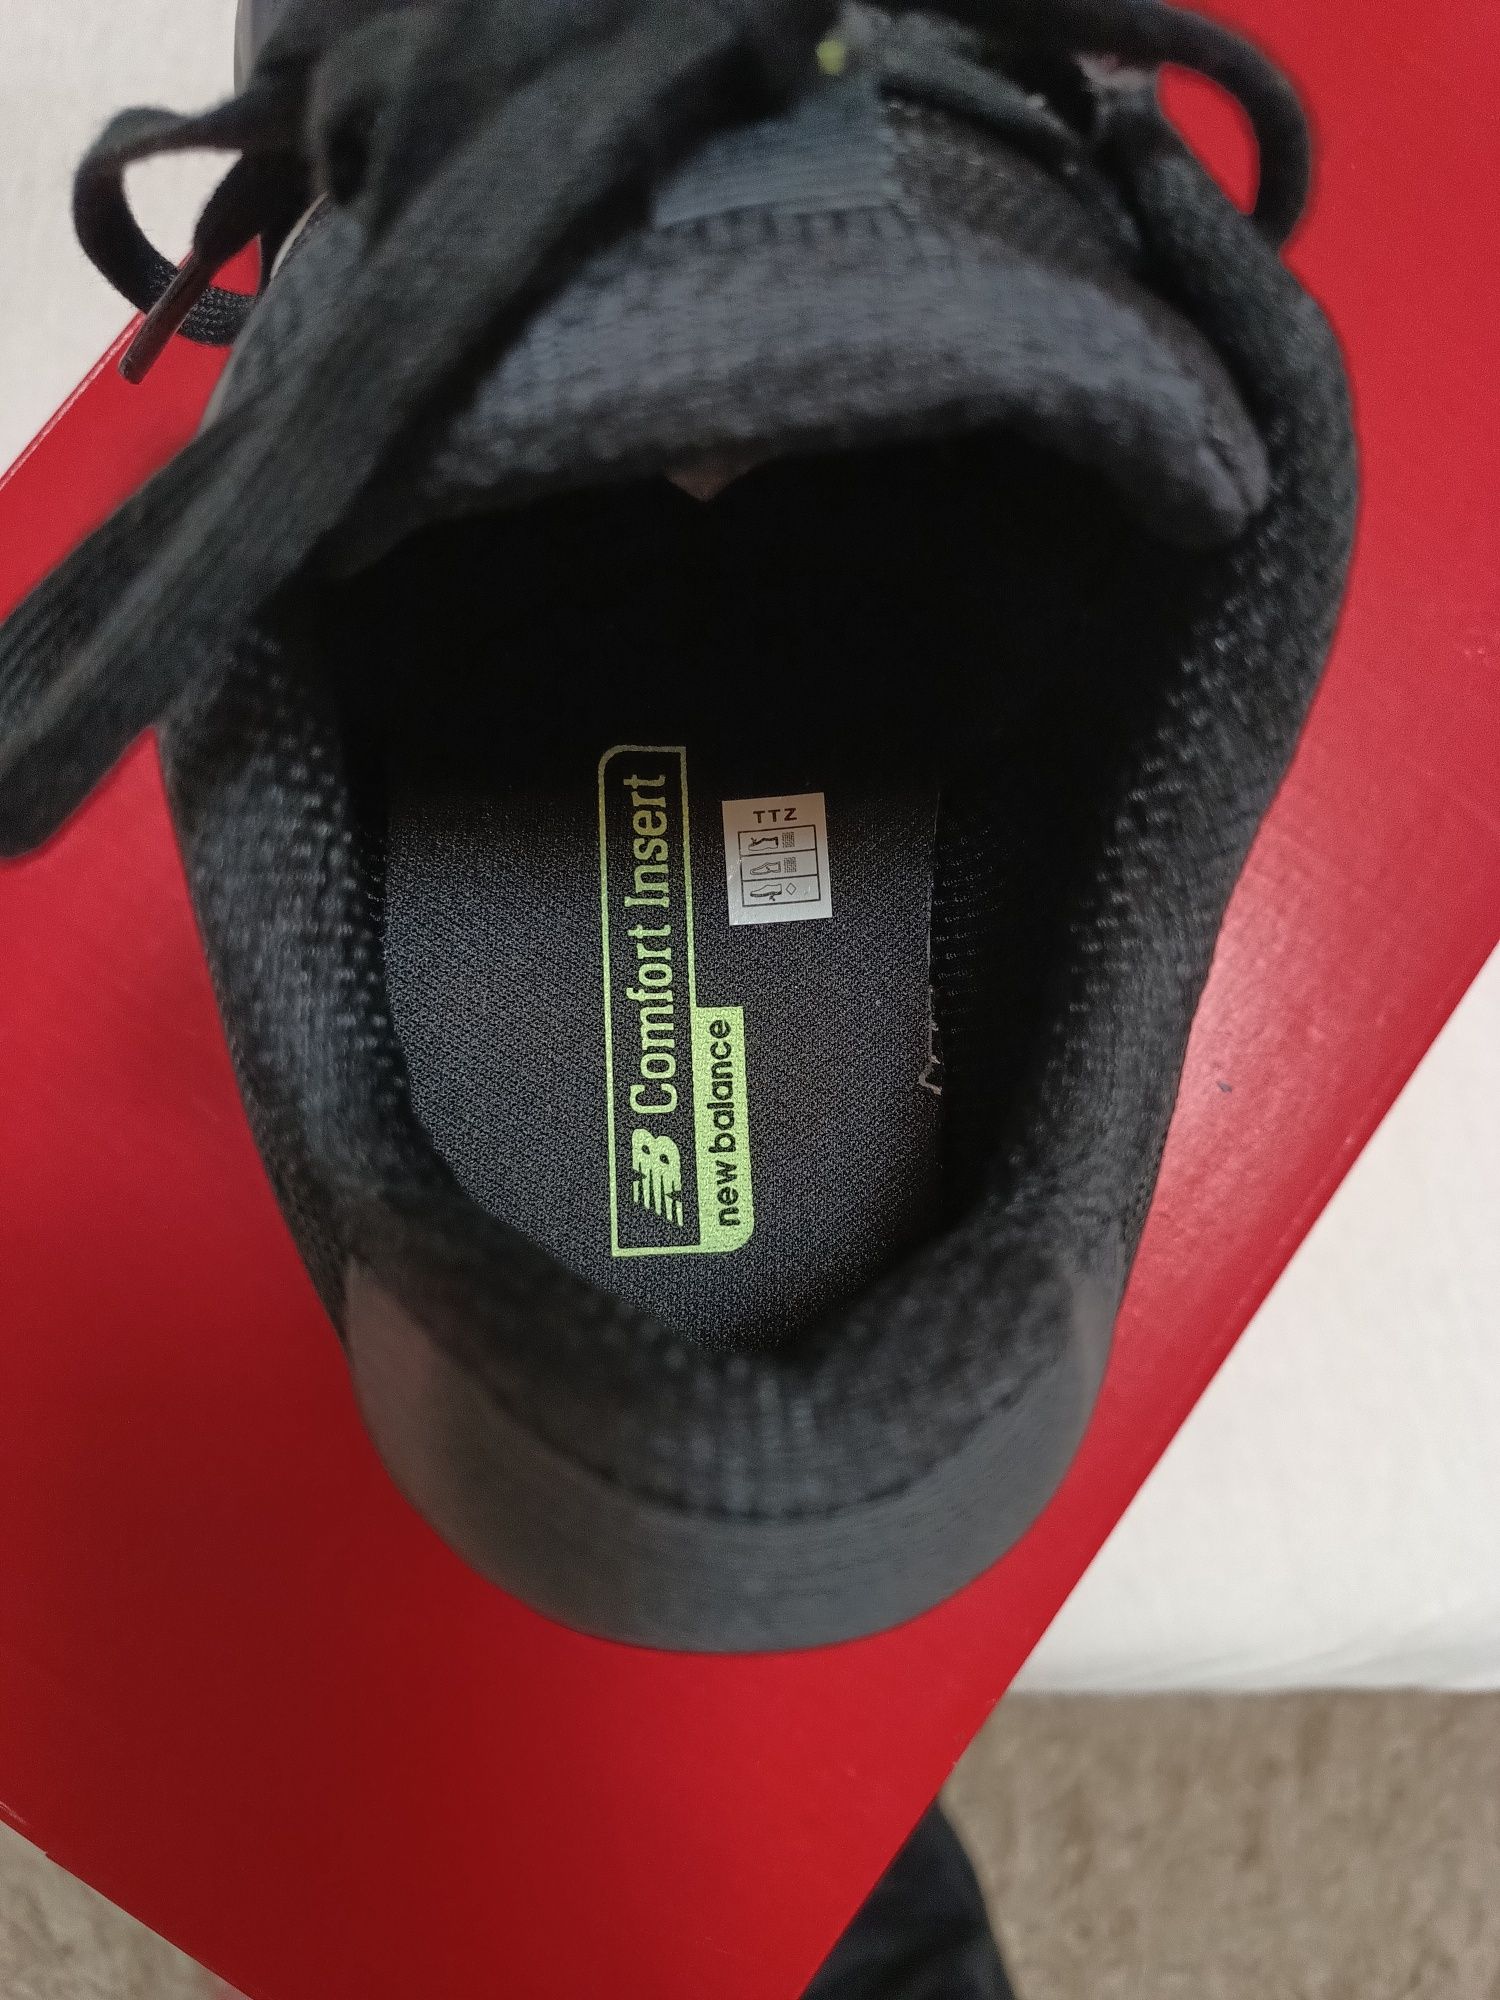 Adidas New Balance Confort nr 41,5-27,5cm preț 320 lei